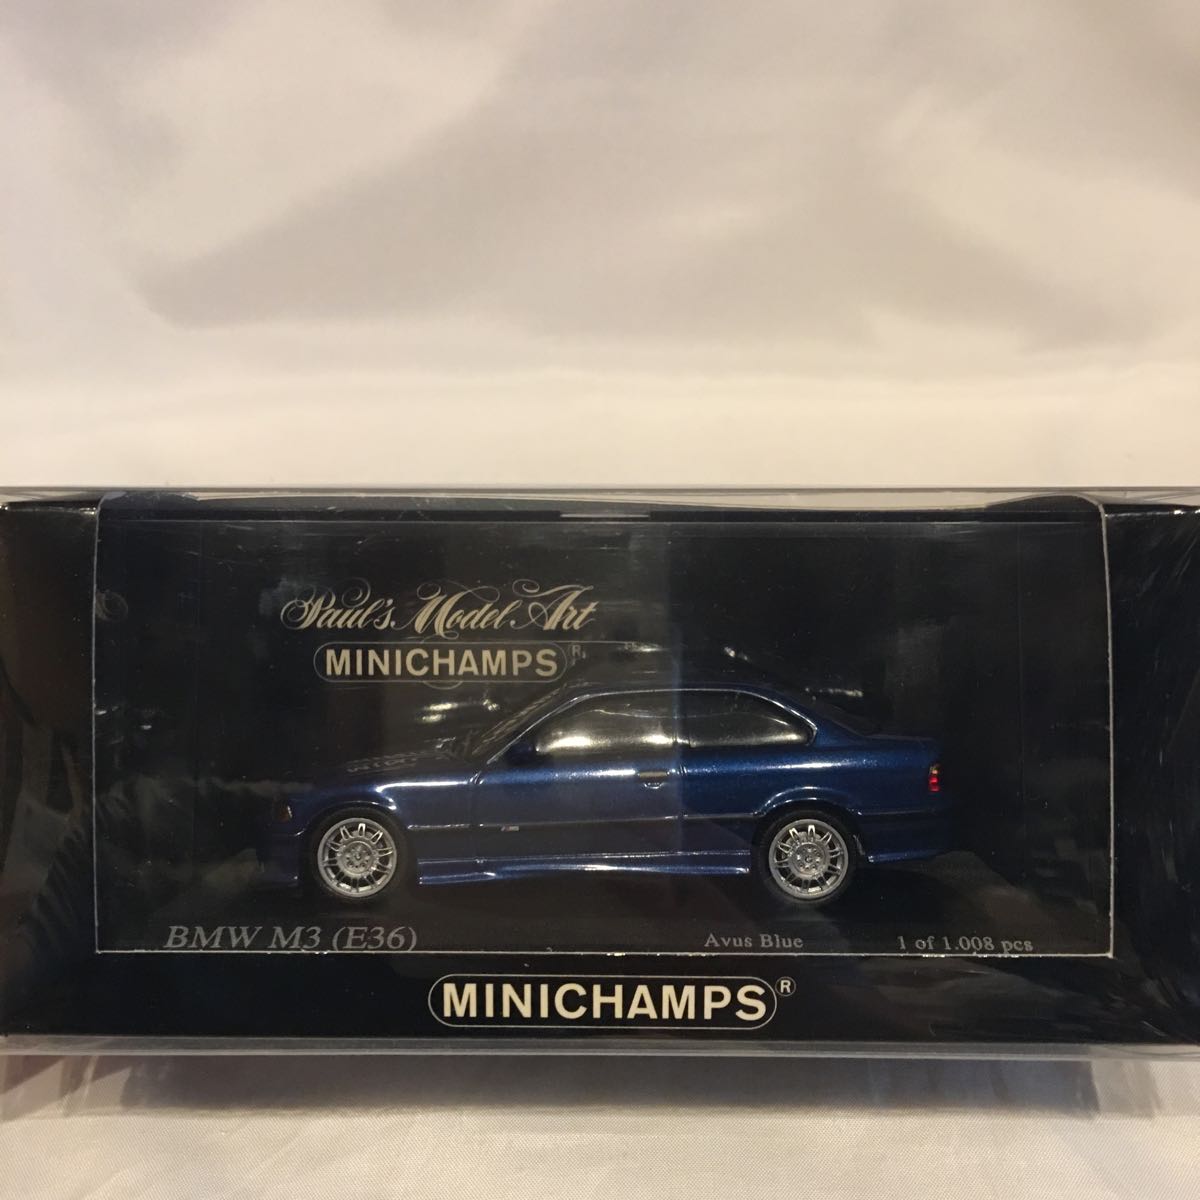 面白部品倉庫限定 MINICHAMPS 1/43 BMW M3 E36 avus blue ブルー ミニカー ミニチャンプス 青色 旧車 モデルカー  3シリーズ